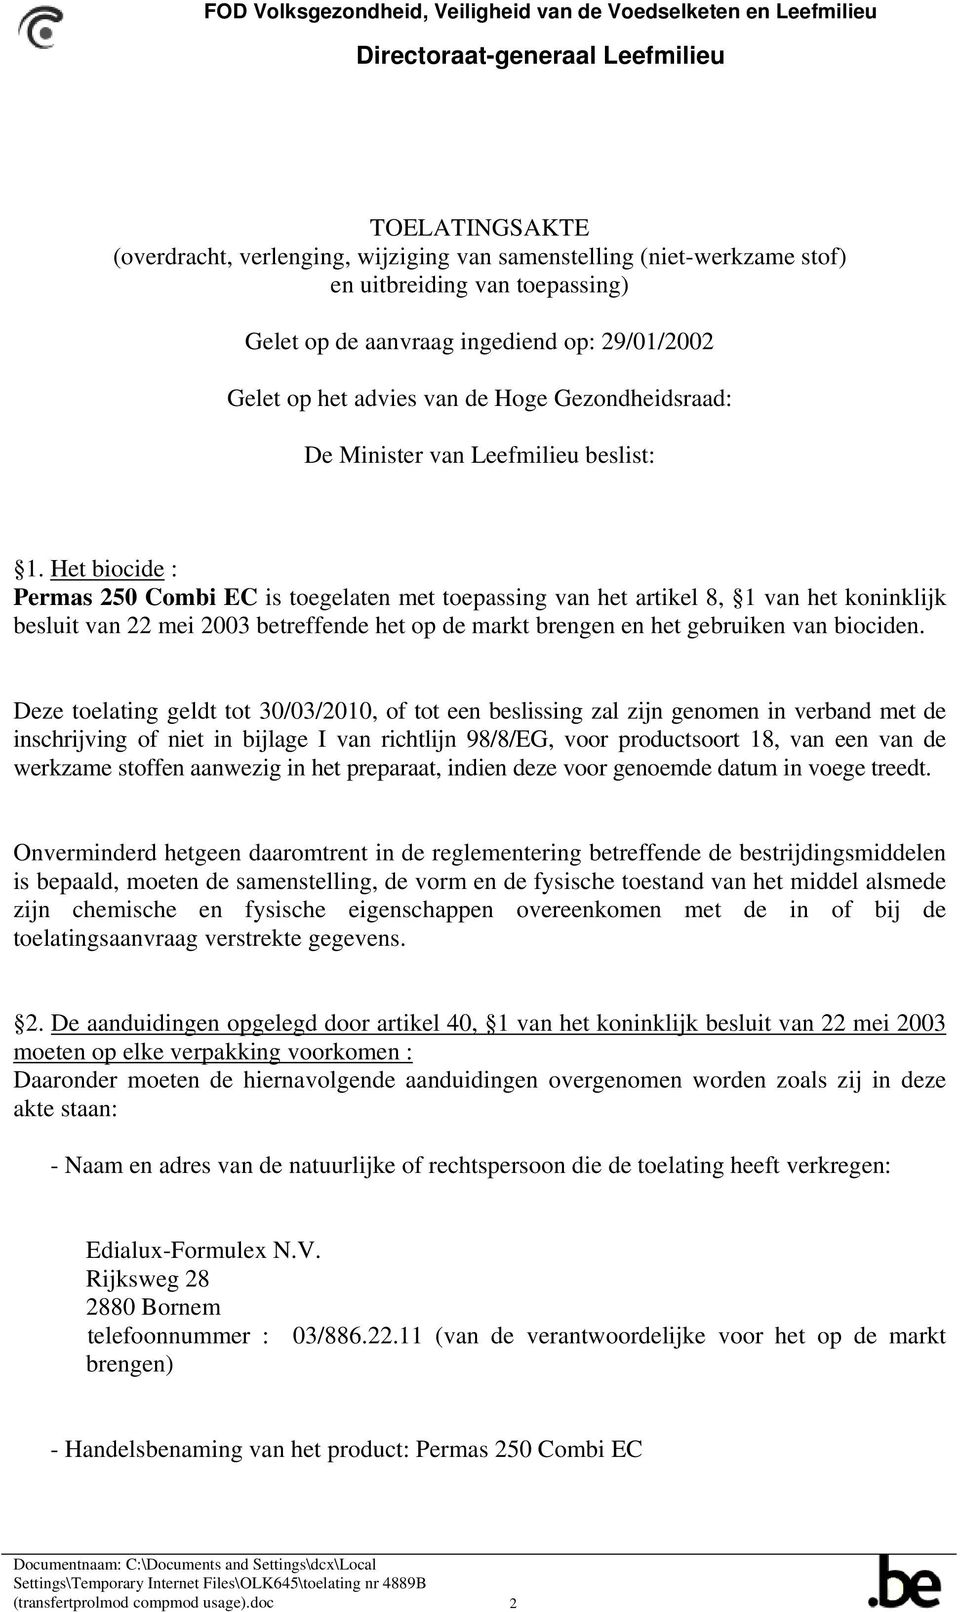 Het biocide : Permas 250 Combi EC is toegelaten met toepassing van het artikel 8, 1 van het koninklijk besluit van 22 mei 2003 betreffende het op de markt brengen en het gebruiken van biociden.